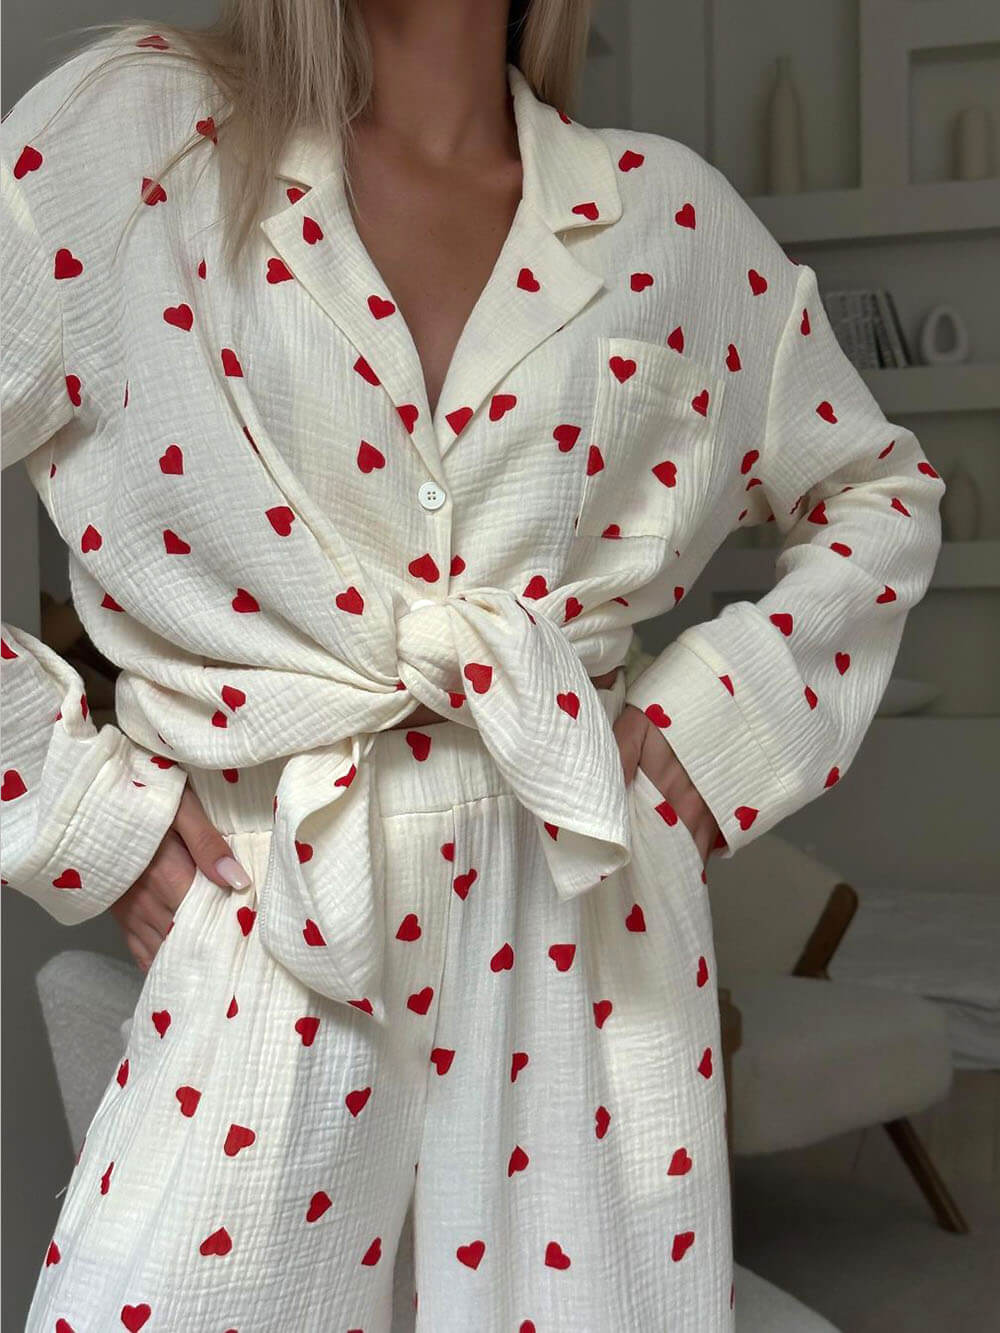 Conjuntos de pijama de camisa con botones y estampado de corazones lindos